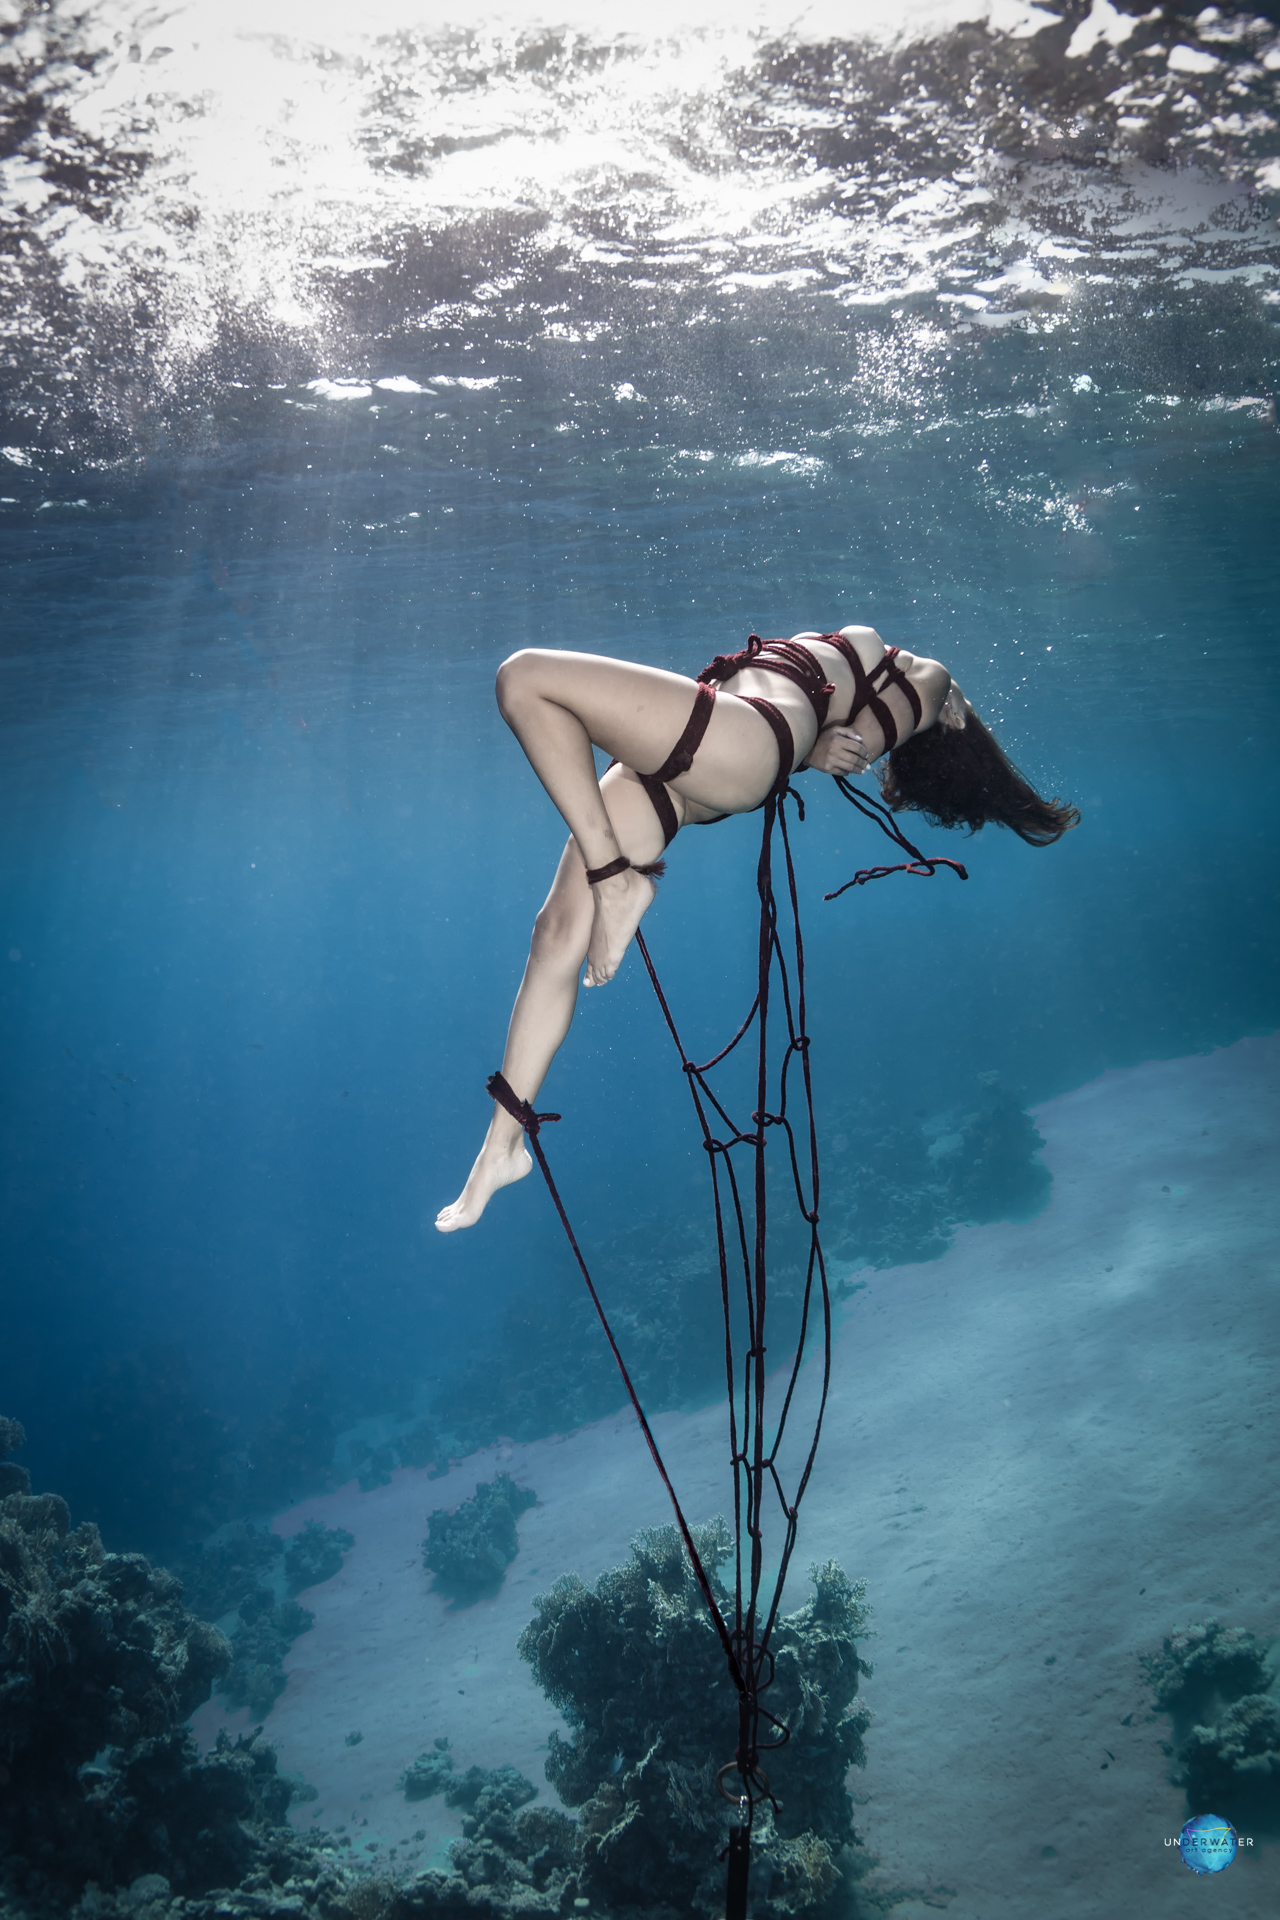 Underwater shibari